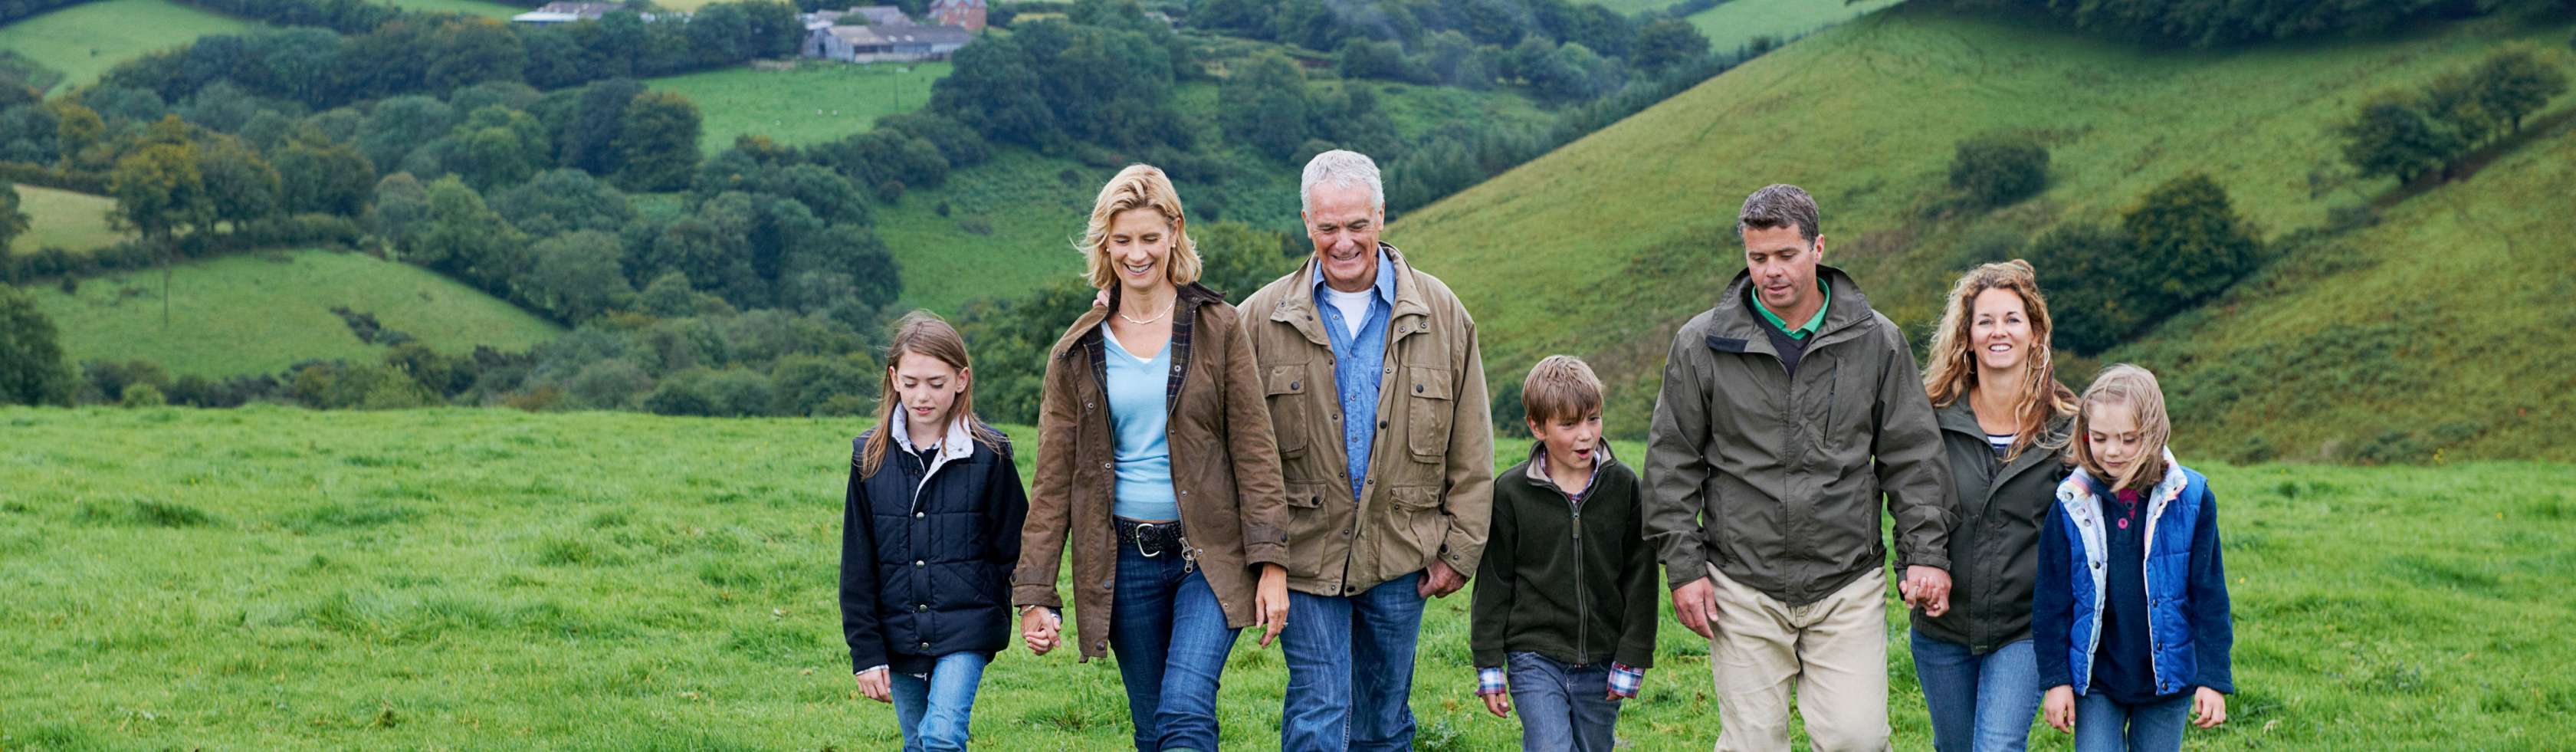 Eine drei Generationen Familie spaziert in einer Hügellandschaft